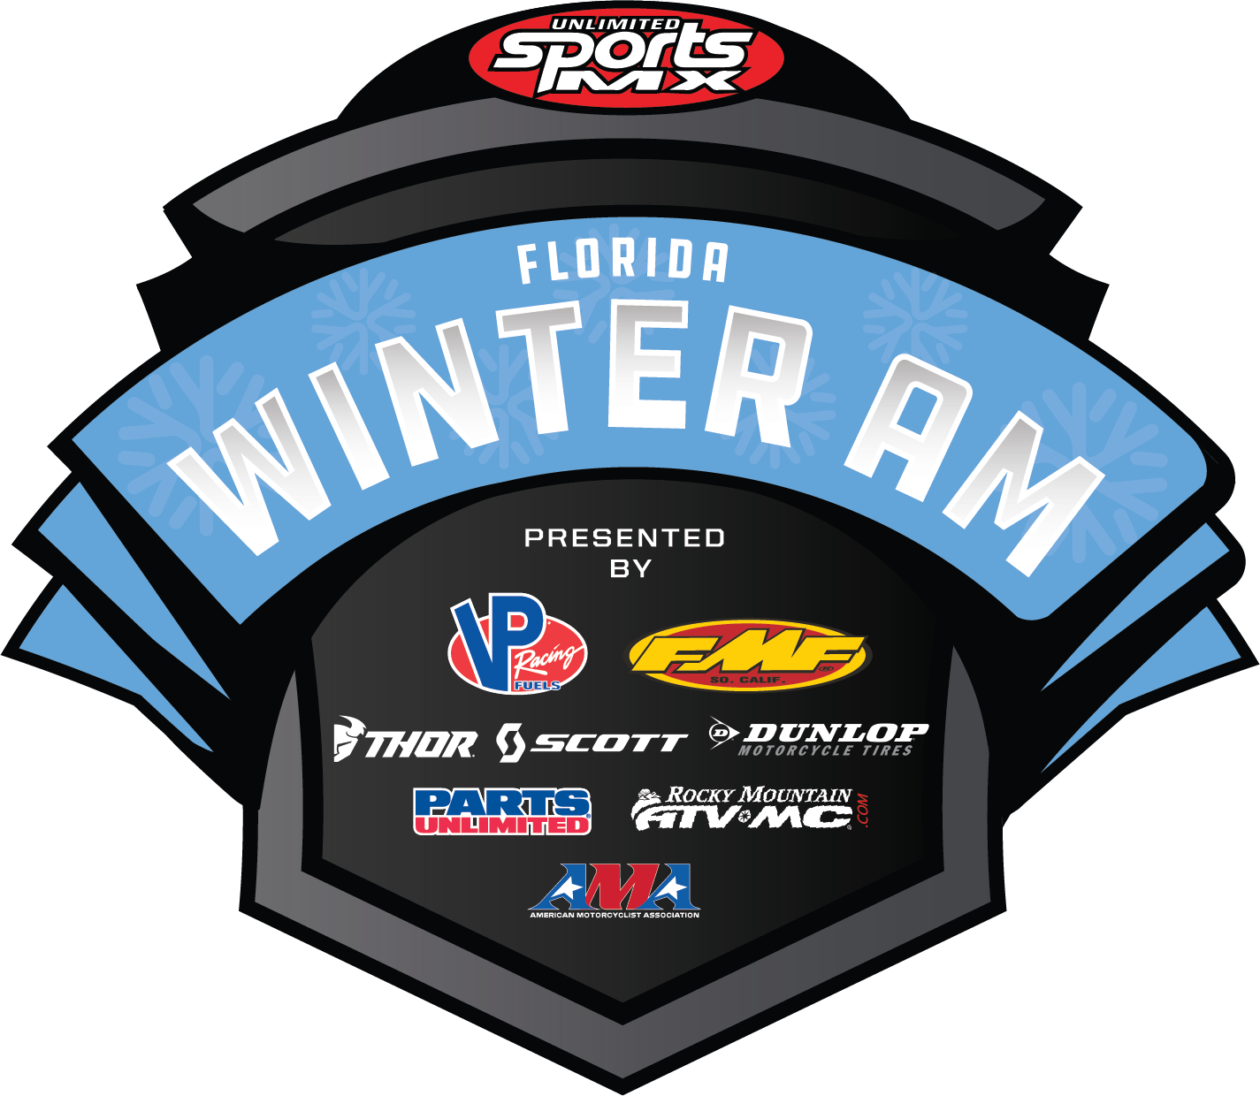 FL Winter Am Unlimited Sports MX